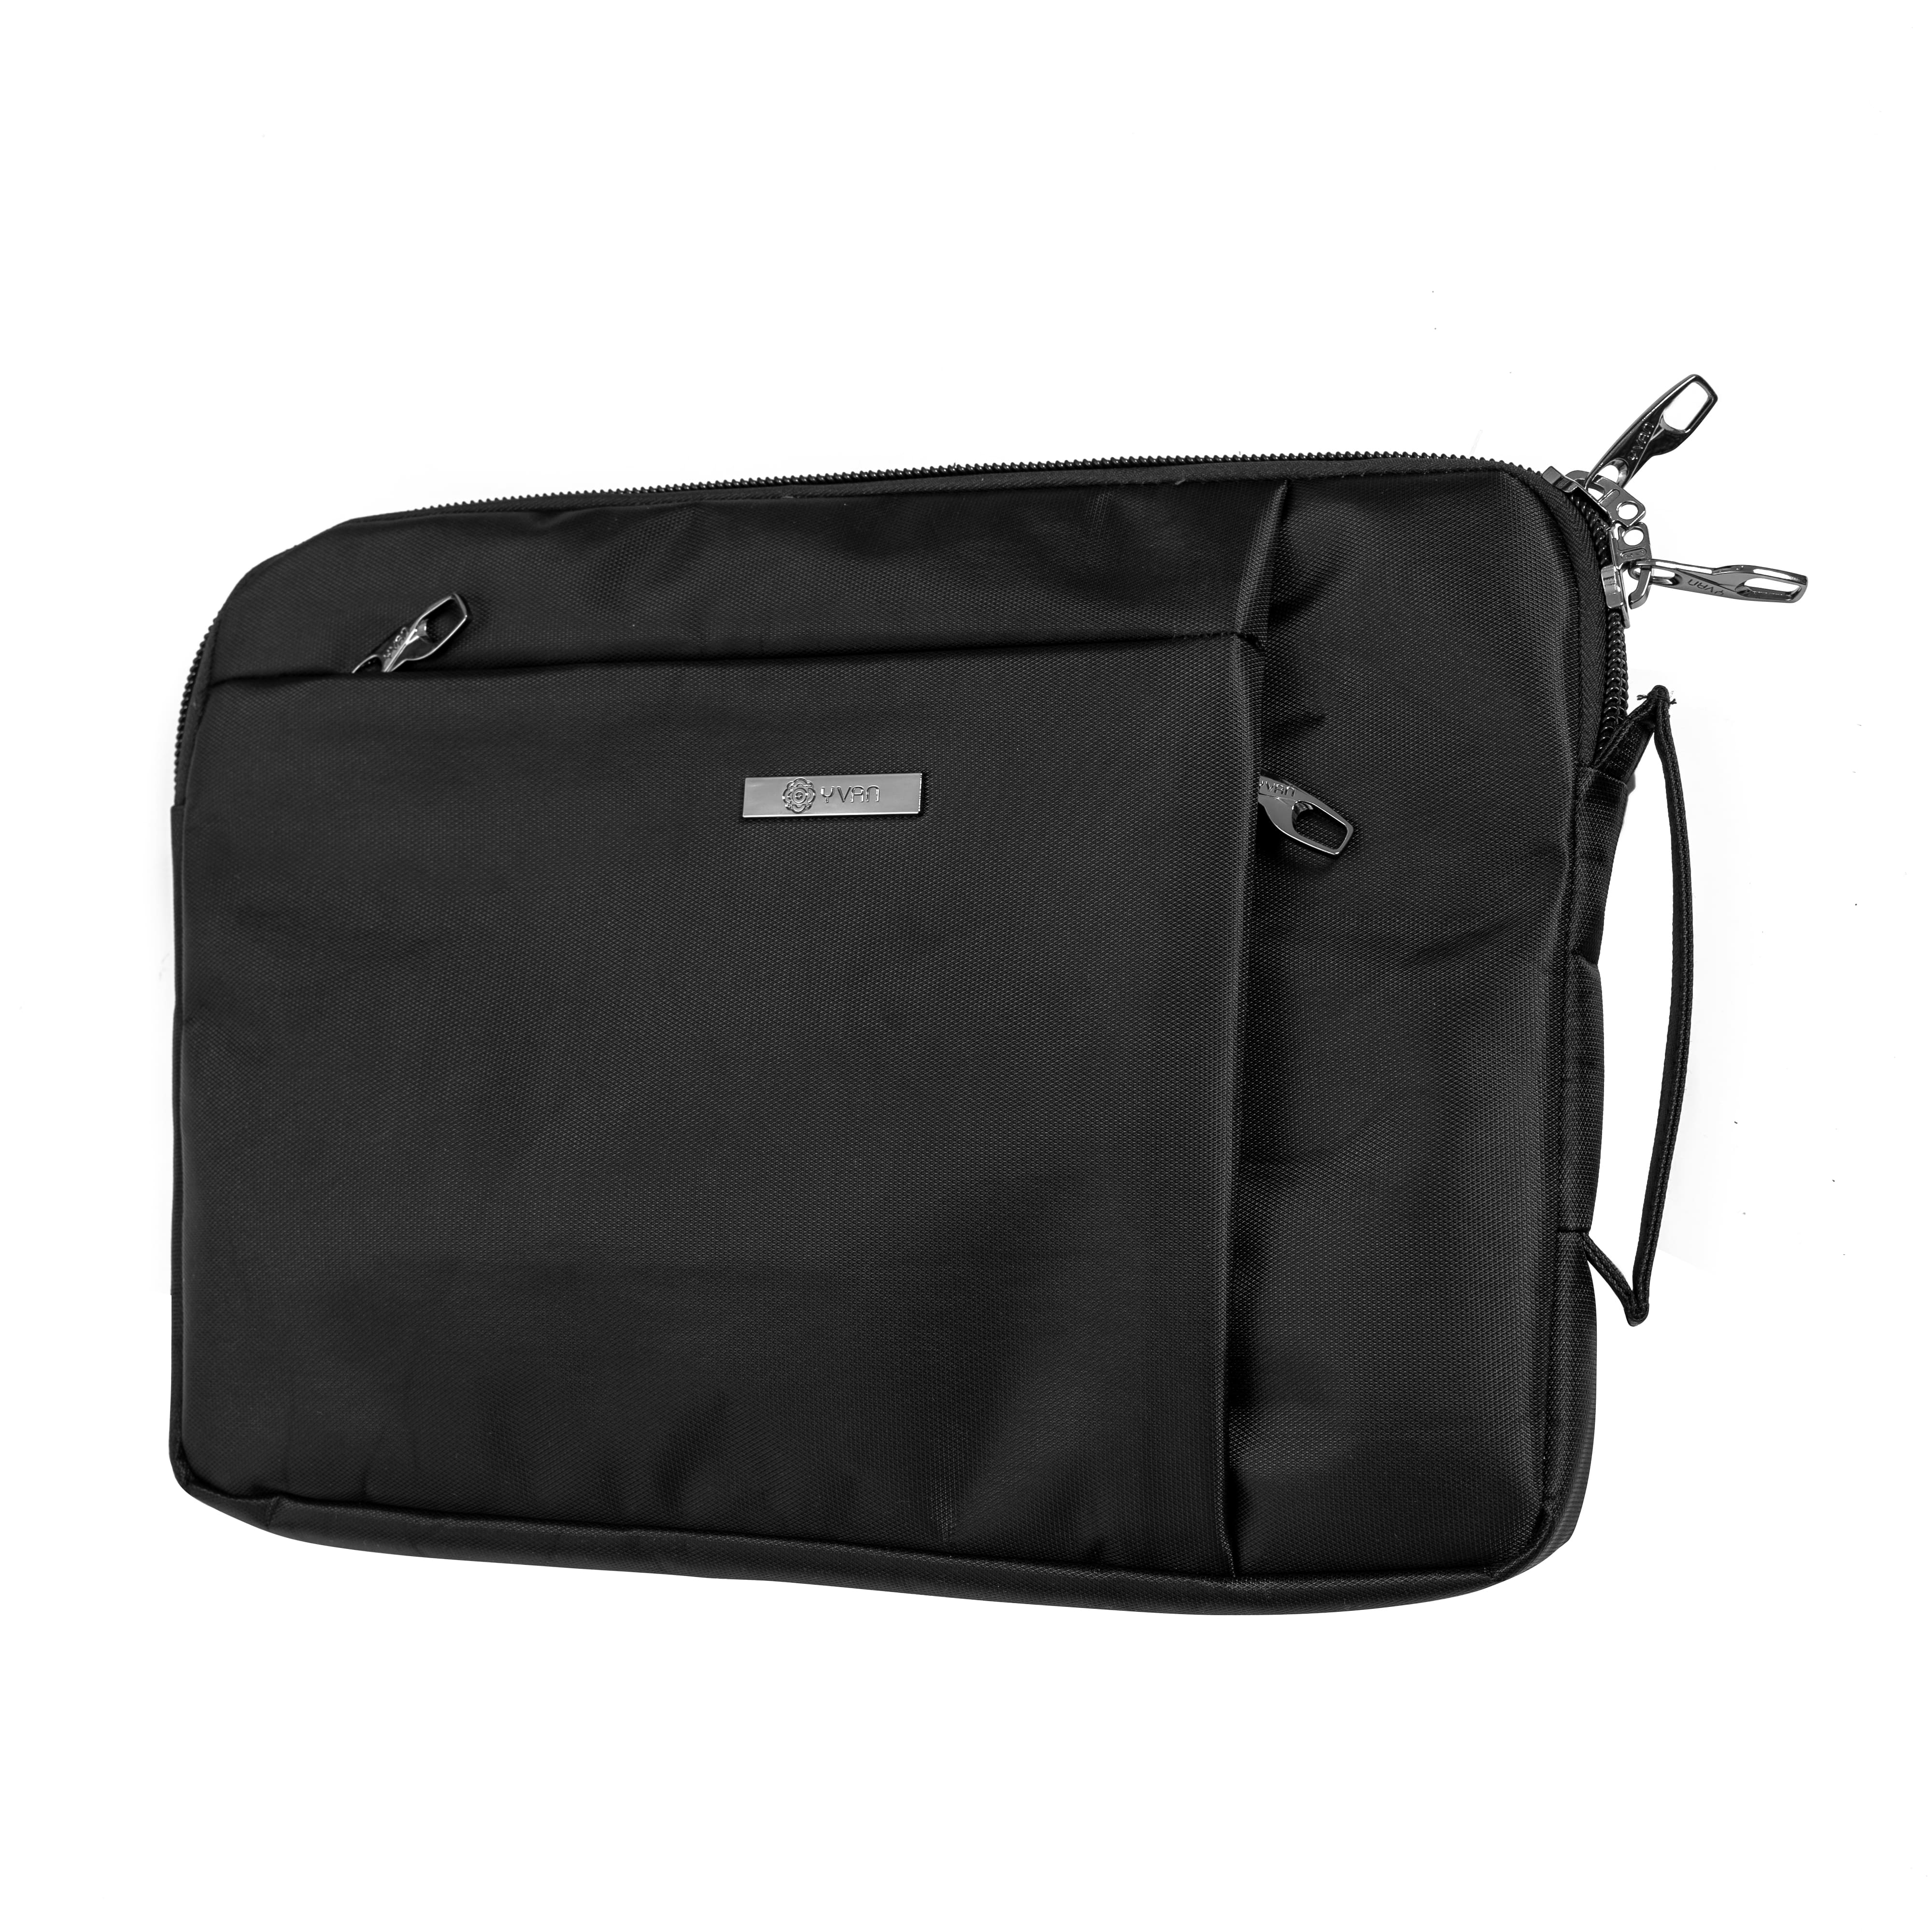 Túi đựng laptop chống sốc màu đen trơn YVan 3504